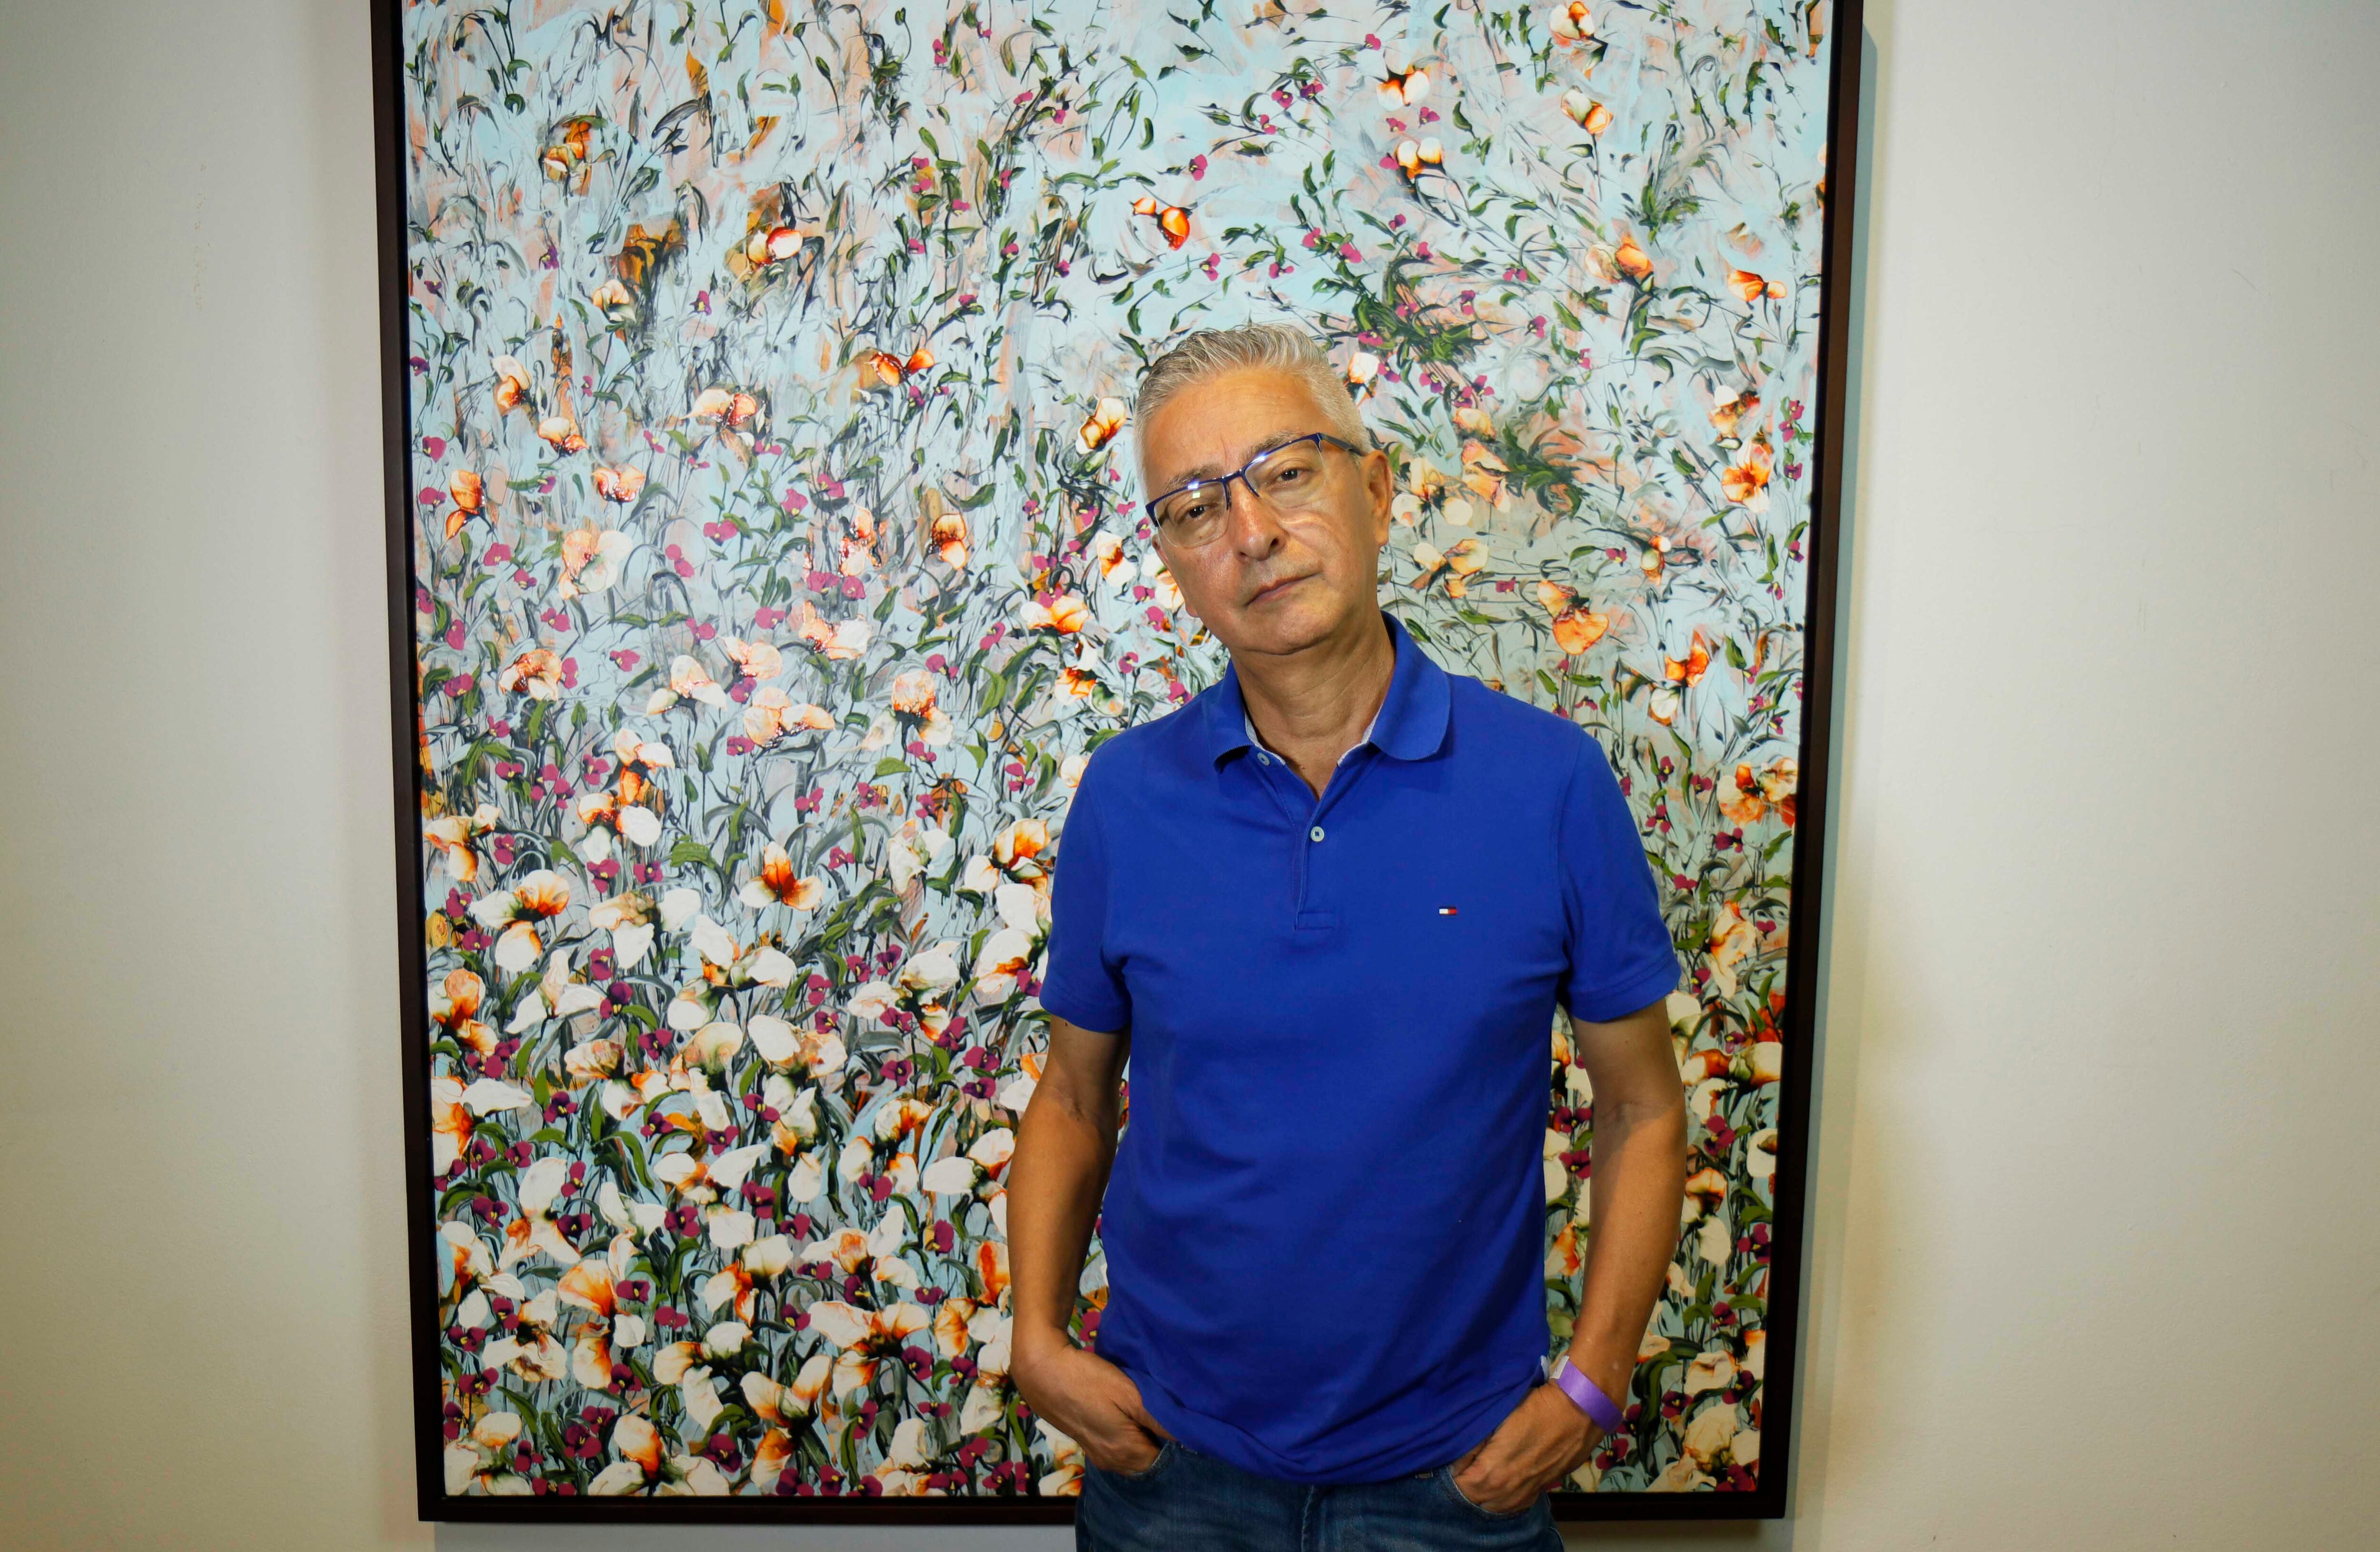 El artista Álvaro Gómez mostrará sus obras en la exposición “1+1 es + que 2”. Cortesía.